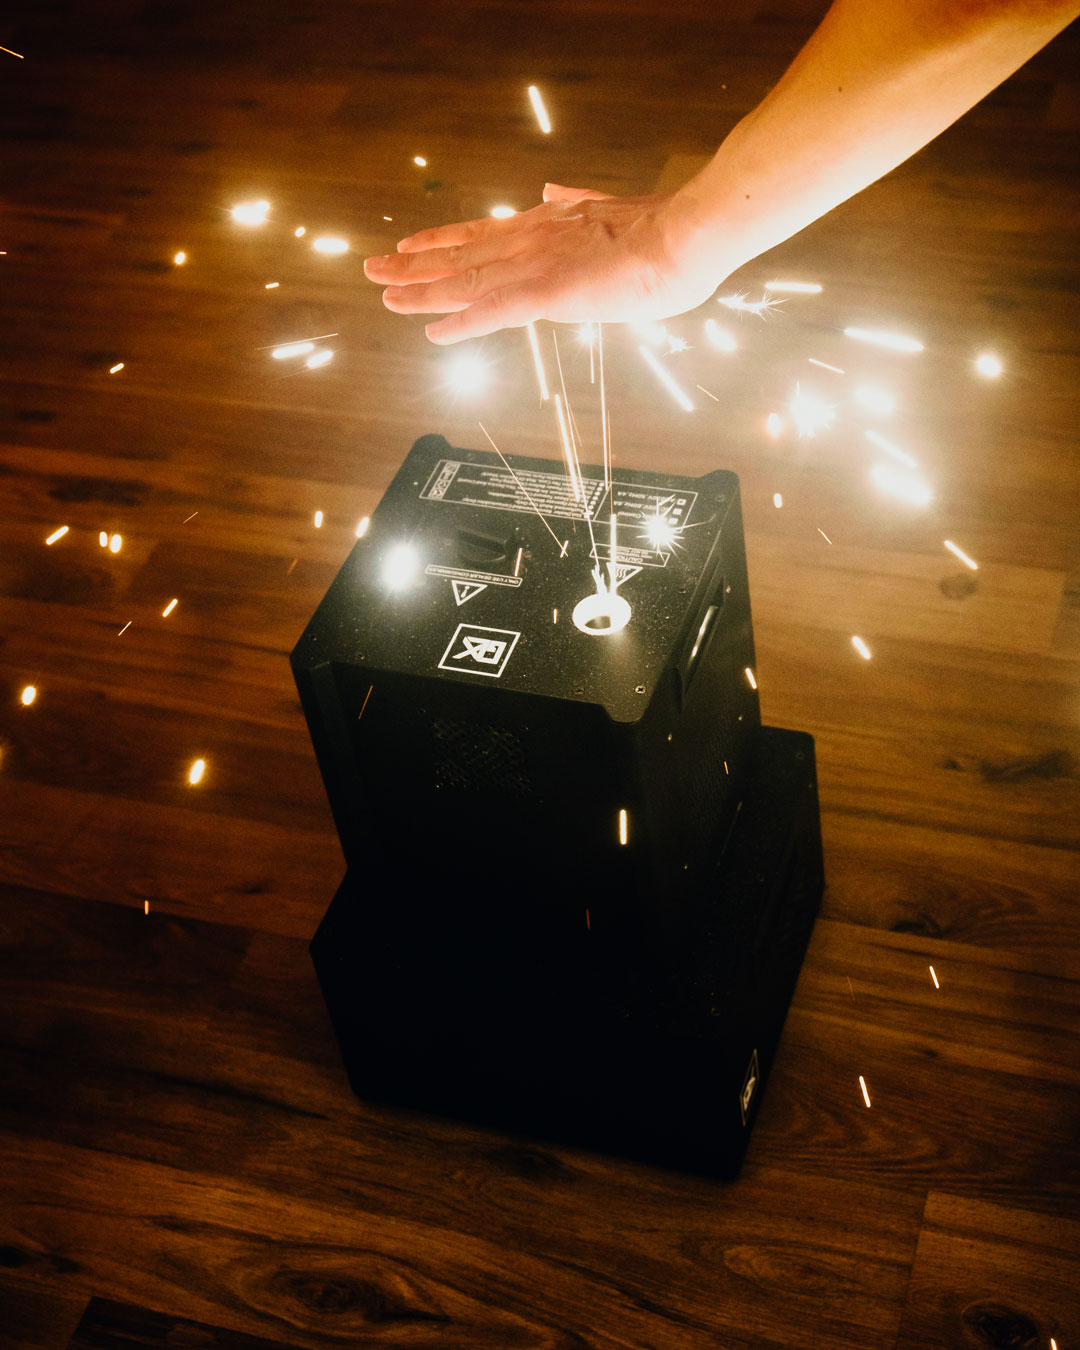 Ein Funkenflug-Gerät von Glüx auf einem Holzboden produziert kaltes Feuerwerk. Eine Hand nähert sich vorsichtig den aufsteigenden Funken, um die Ungefährlichkeit der Funken zu demonstrieren.